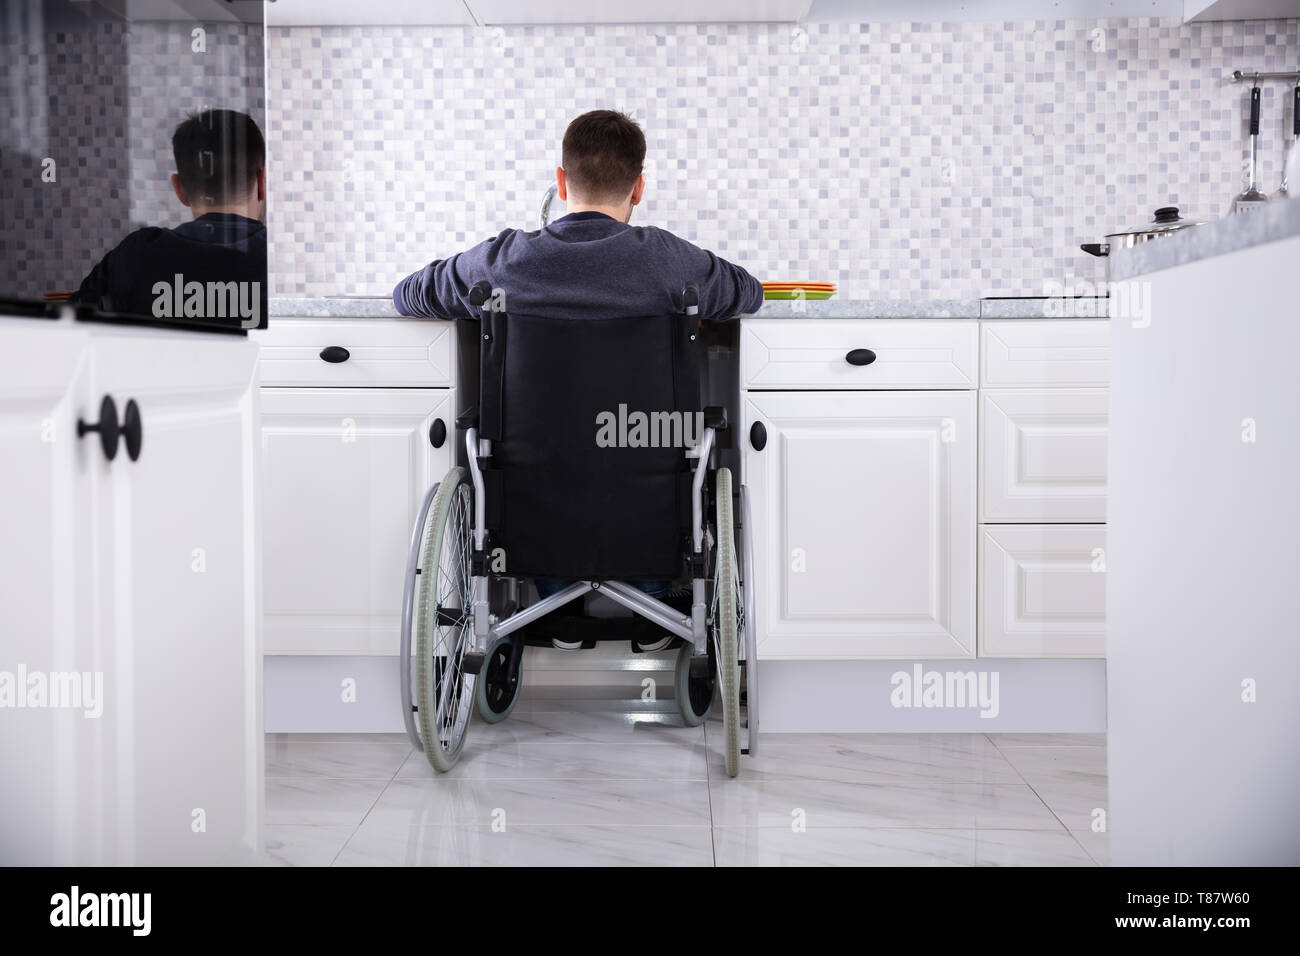 Behinderte Mann sitzt auf Rollstuhl Waschen und Reinigung Geschirr in der Küche Stockfoto